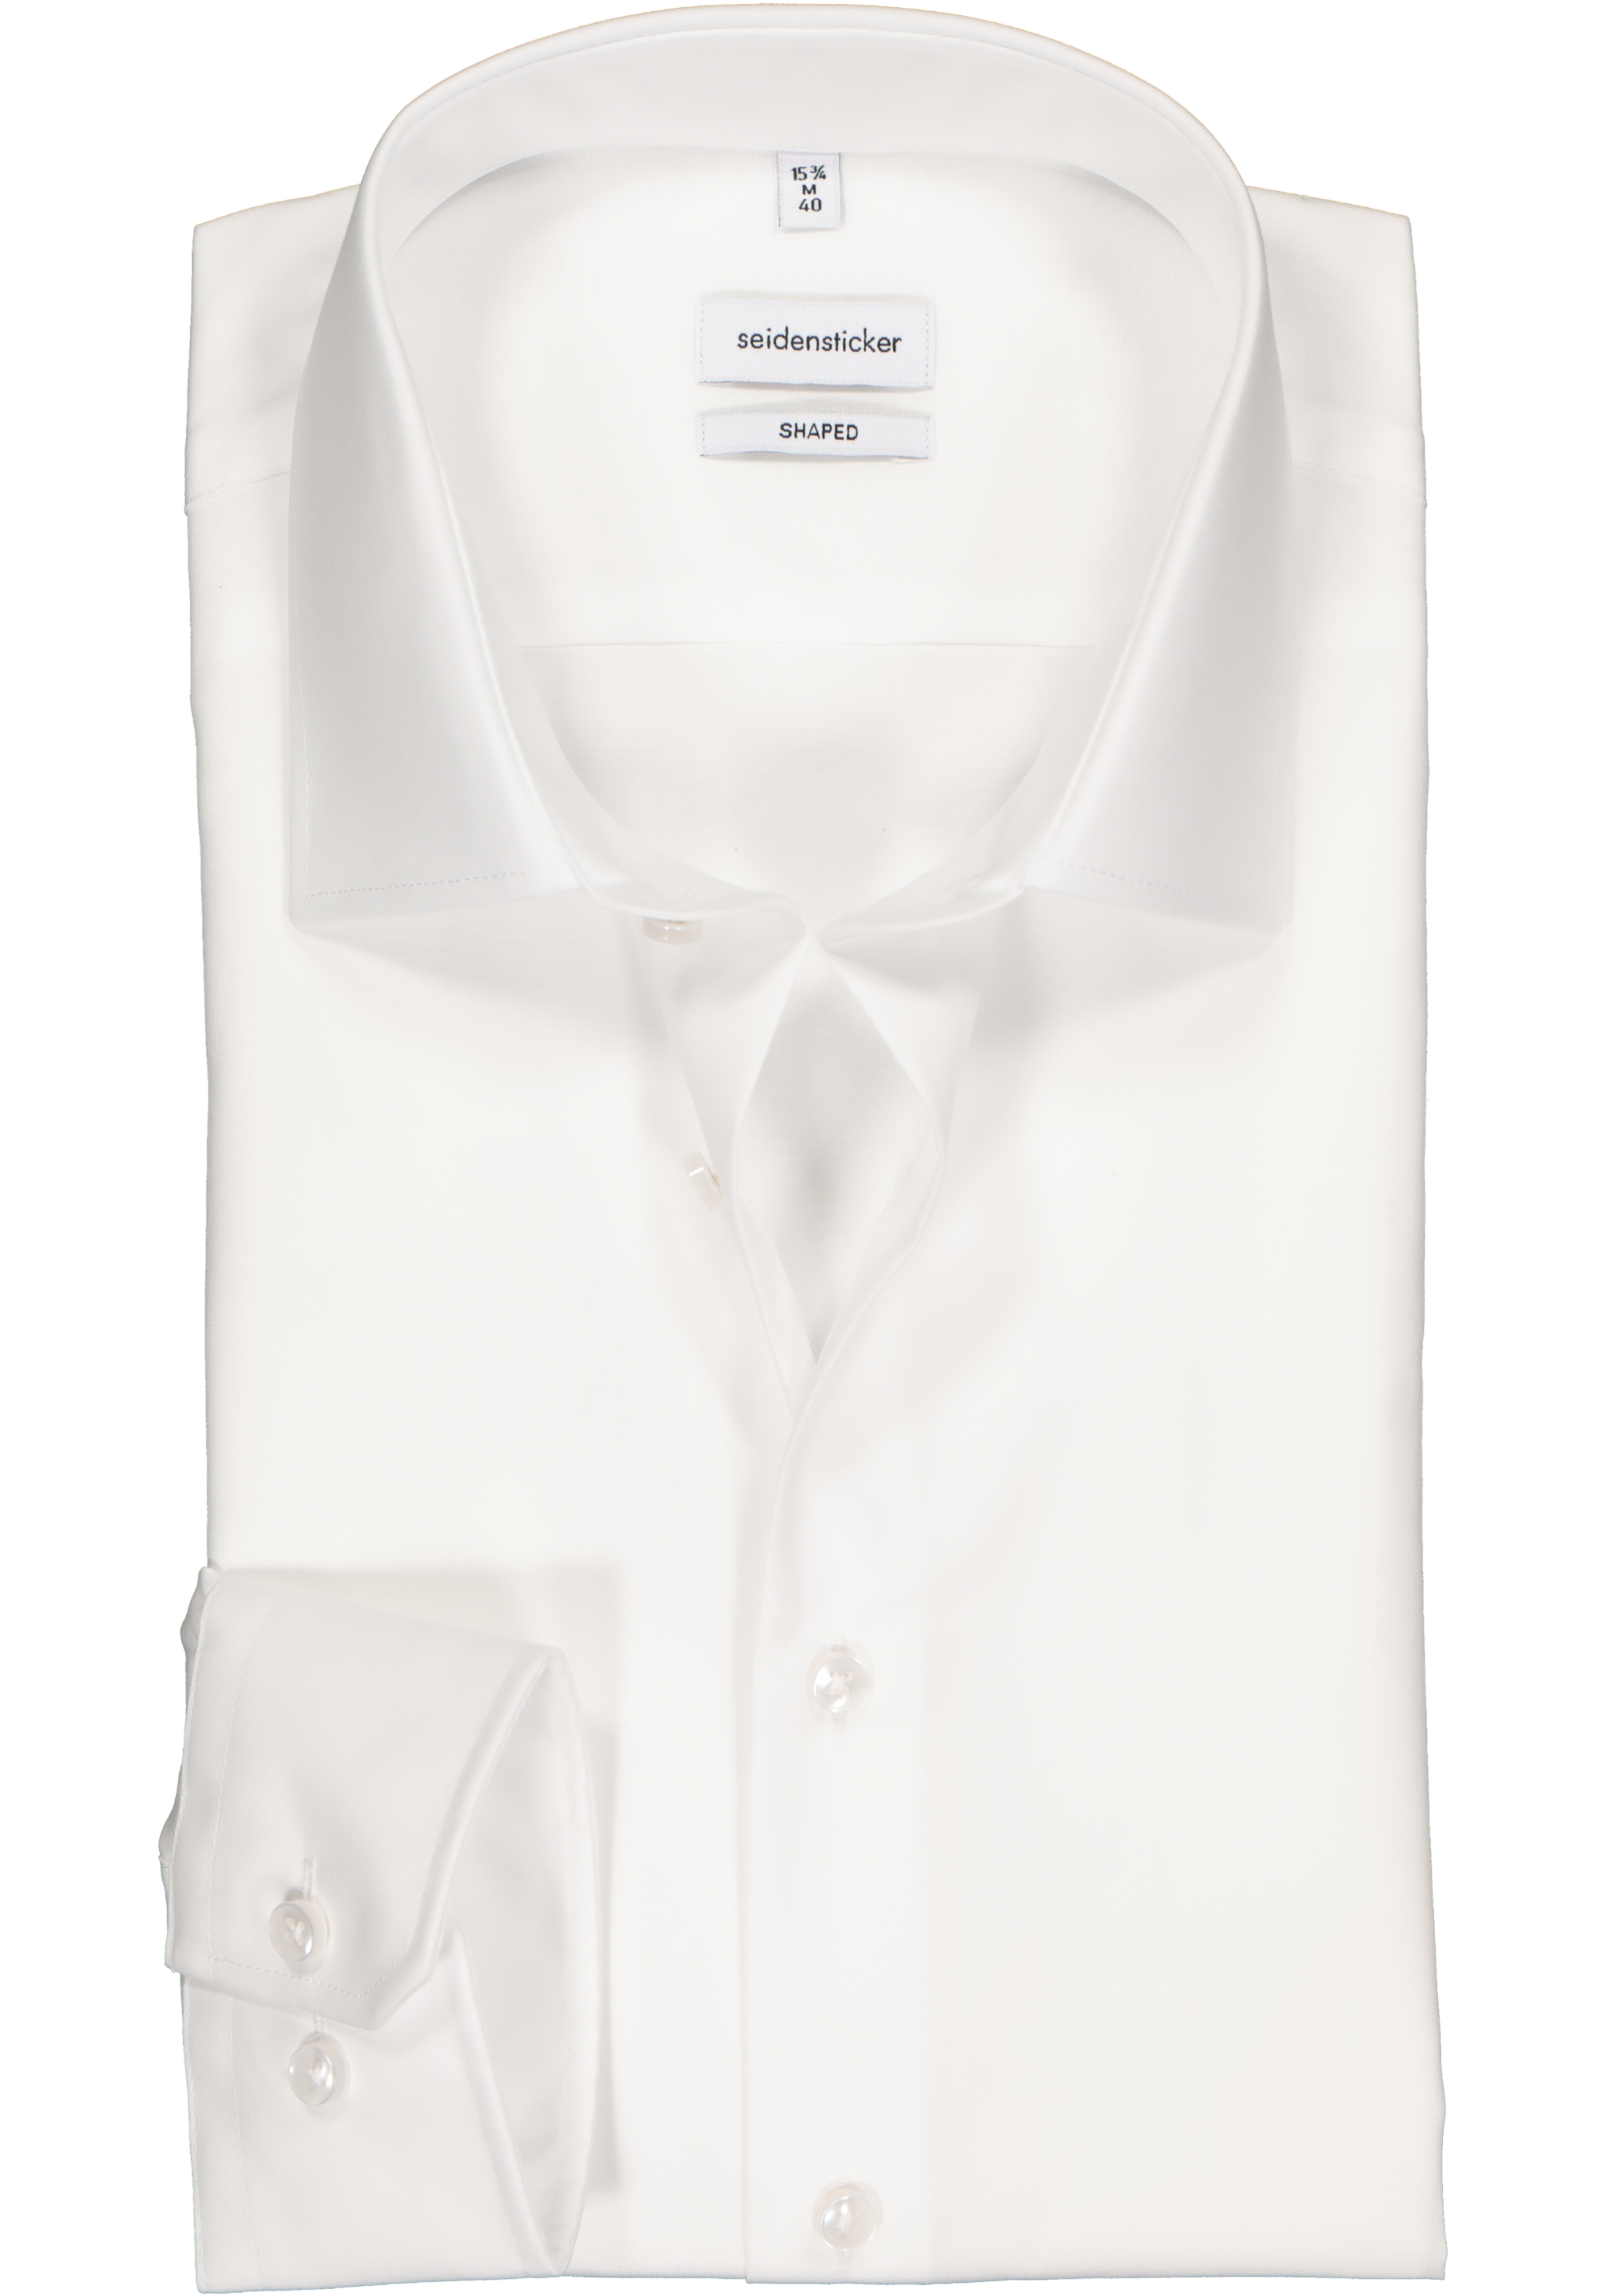 Seidensticker shaped fit overhemd, mouwlengte 7, wit